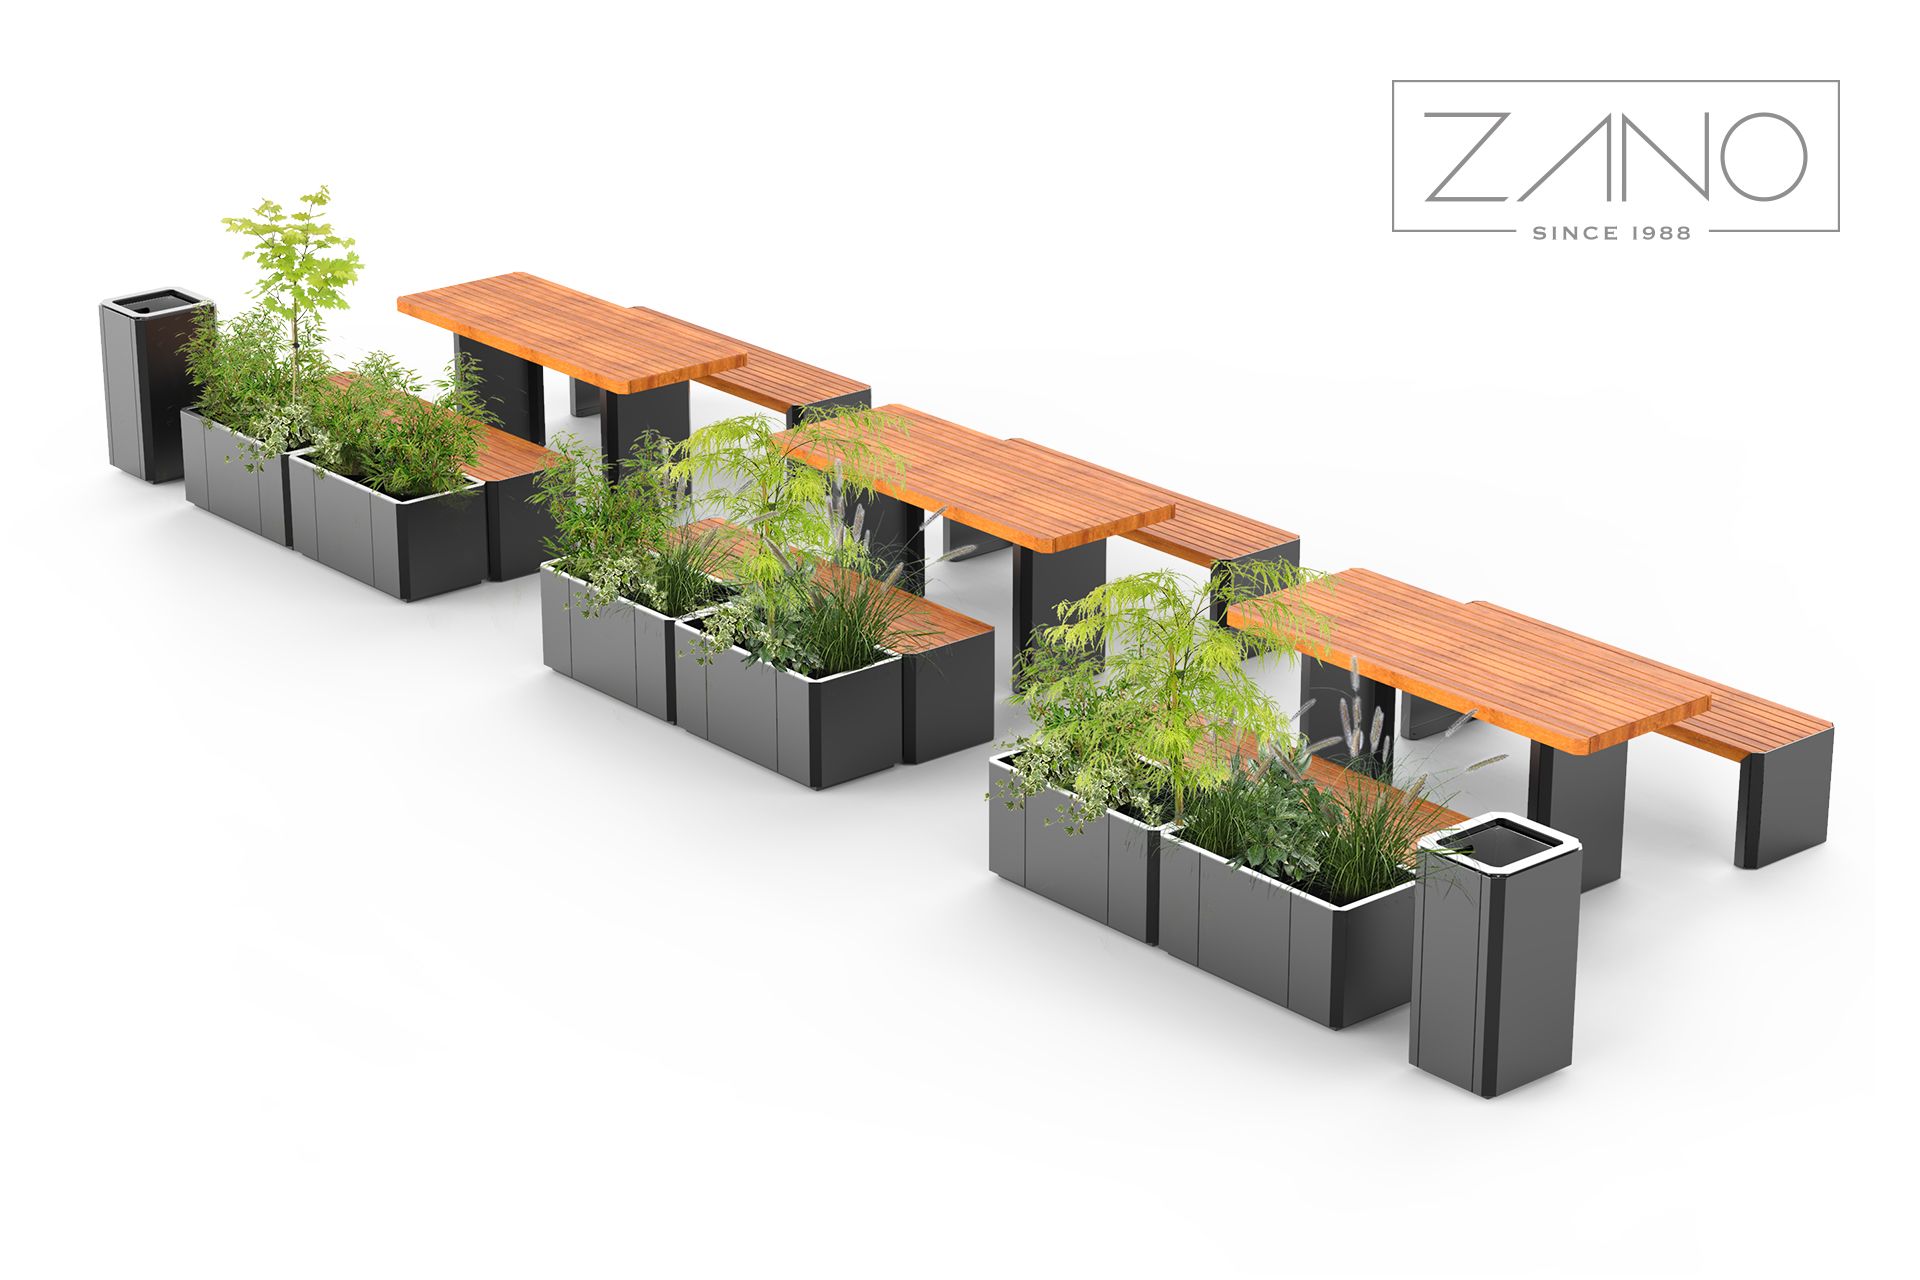 Stilo - bancs et jardinières de ZANO mobilier urbain